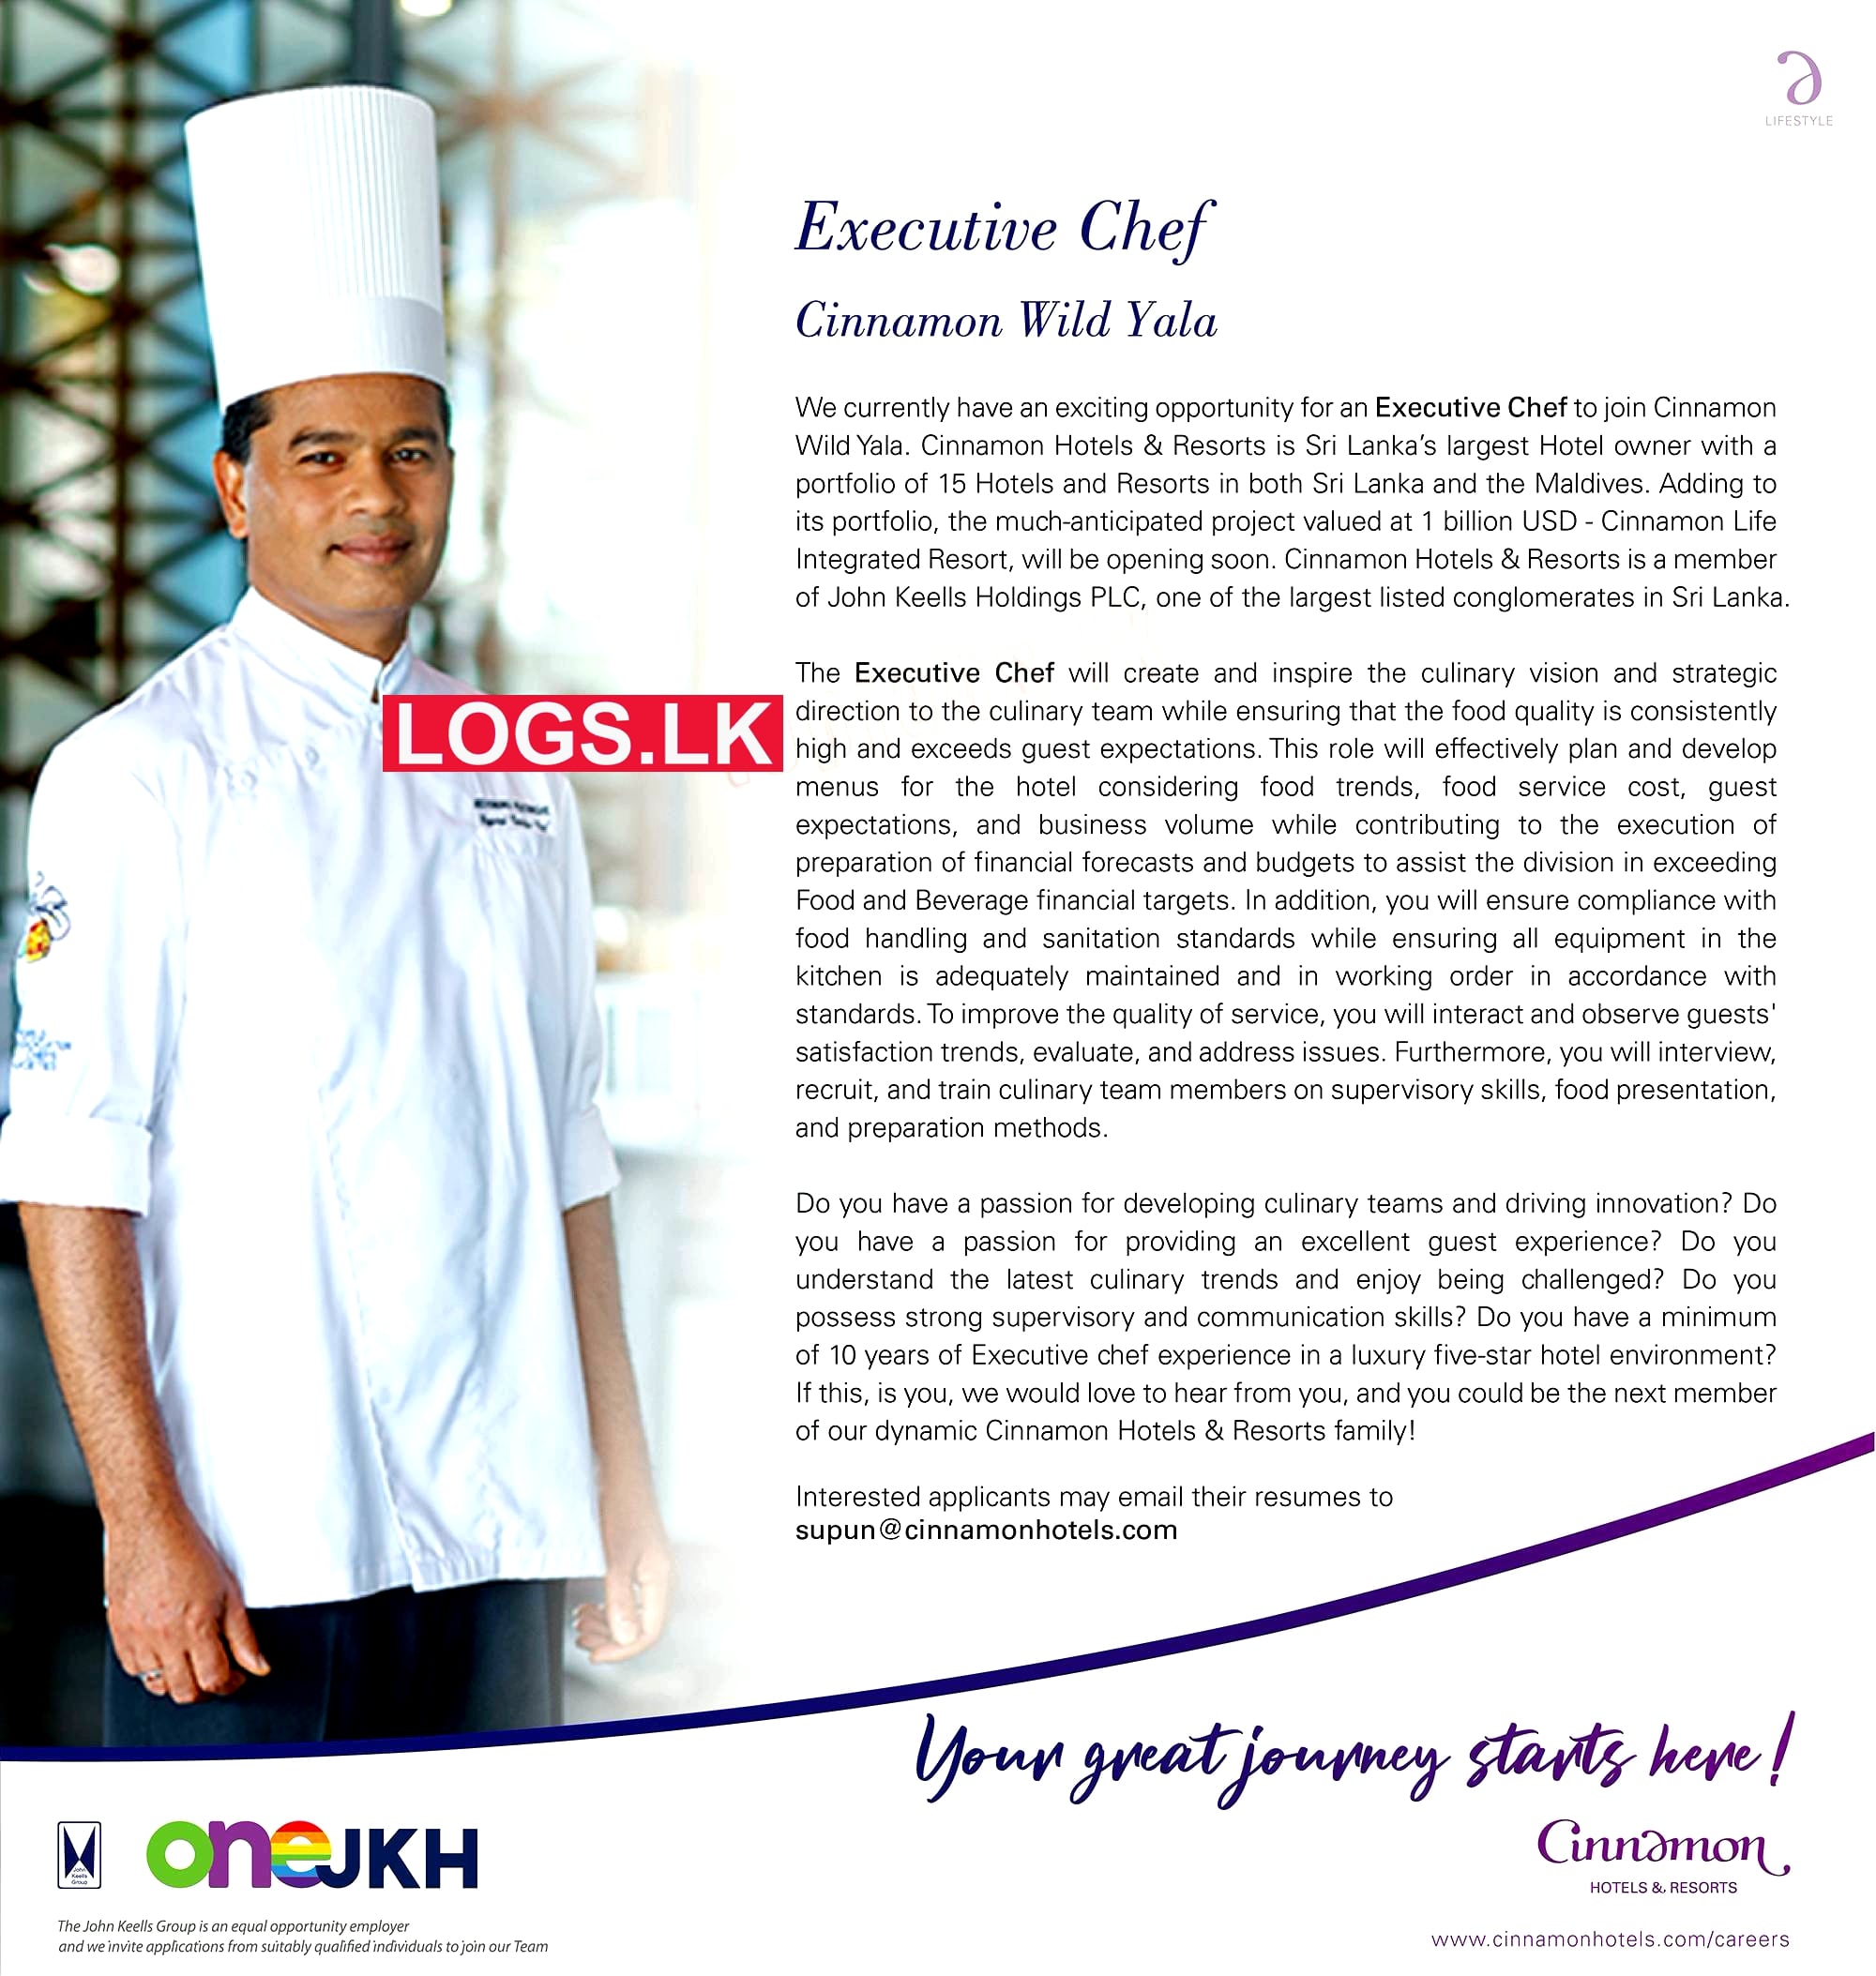 Executives Chef Job Vacancy at Cinnamon Hotel Management Ltd Job Vacancies